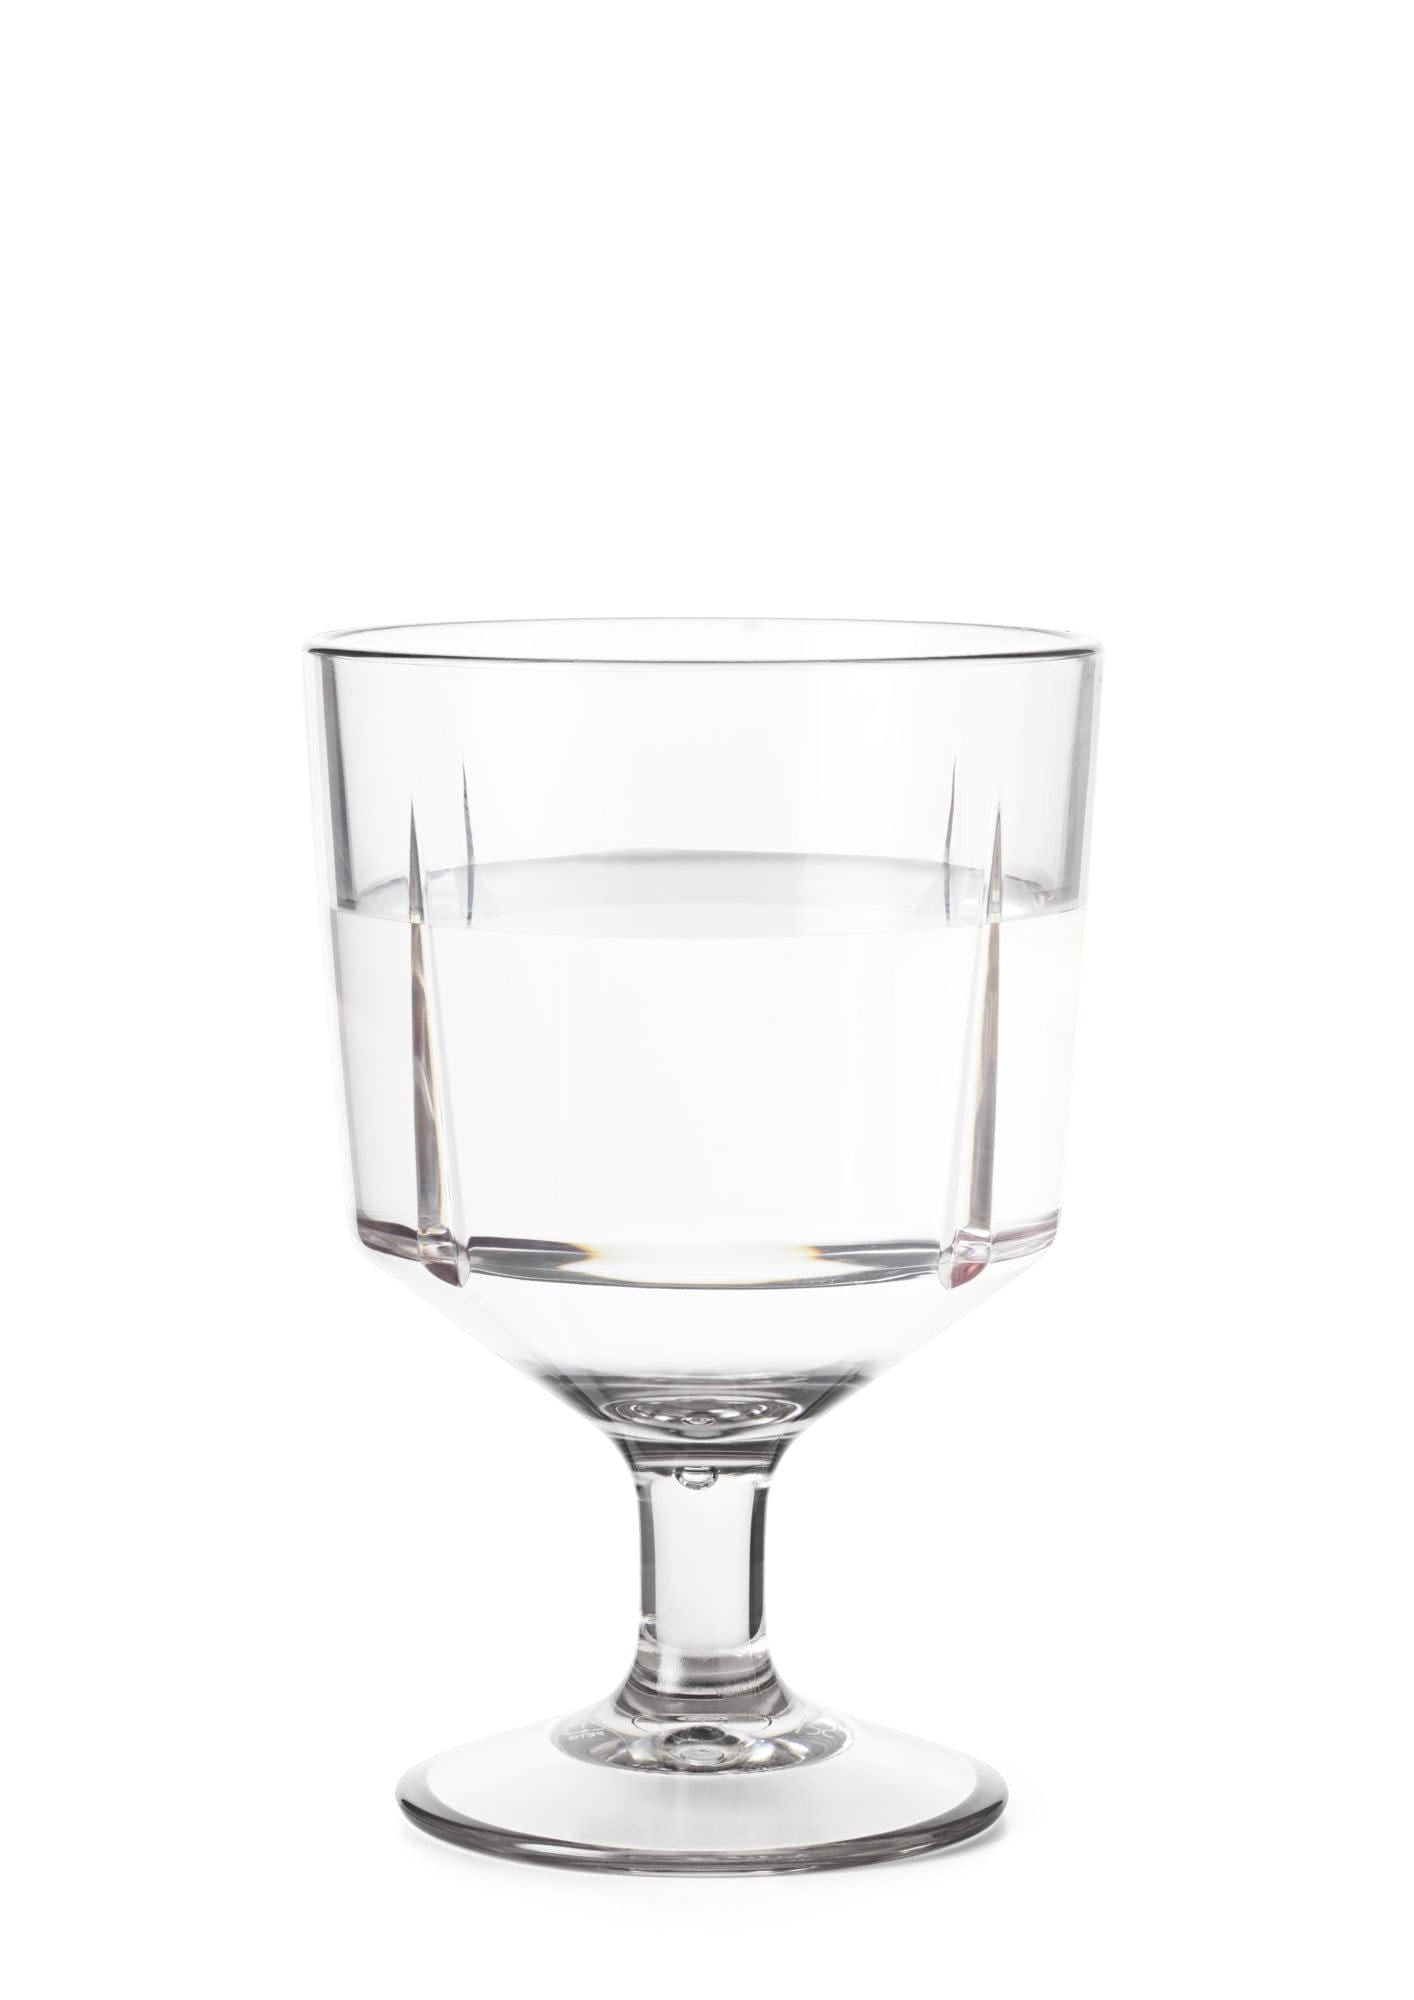 Rosendahl GC Outdoor -Glas -Set von 260 ml, klar